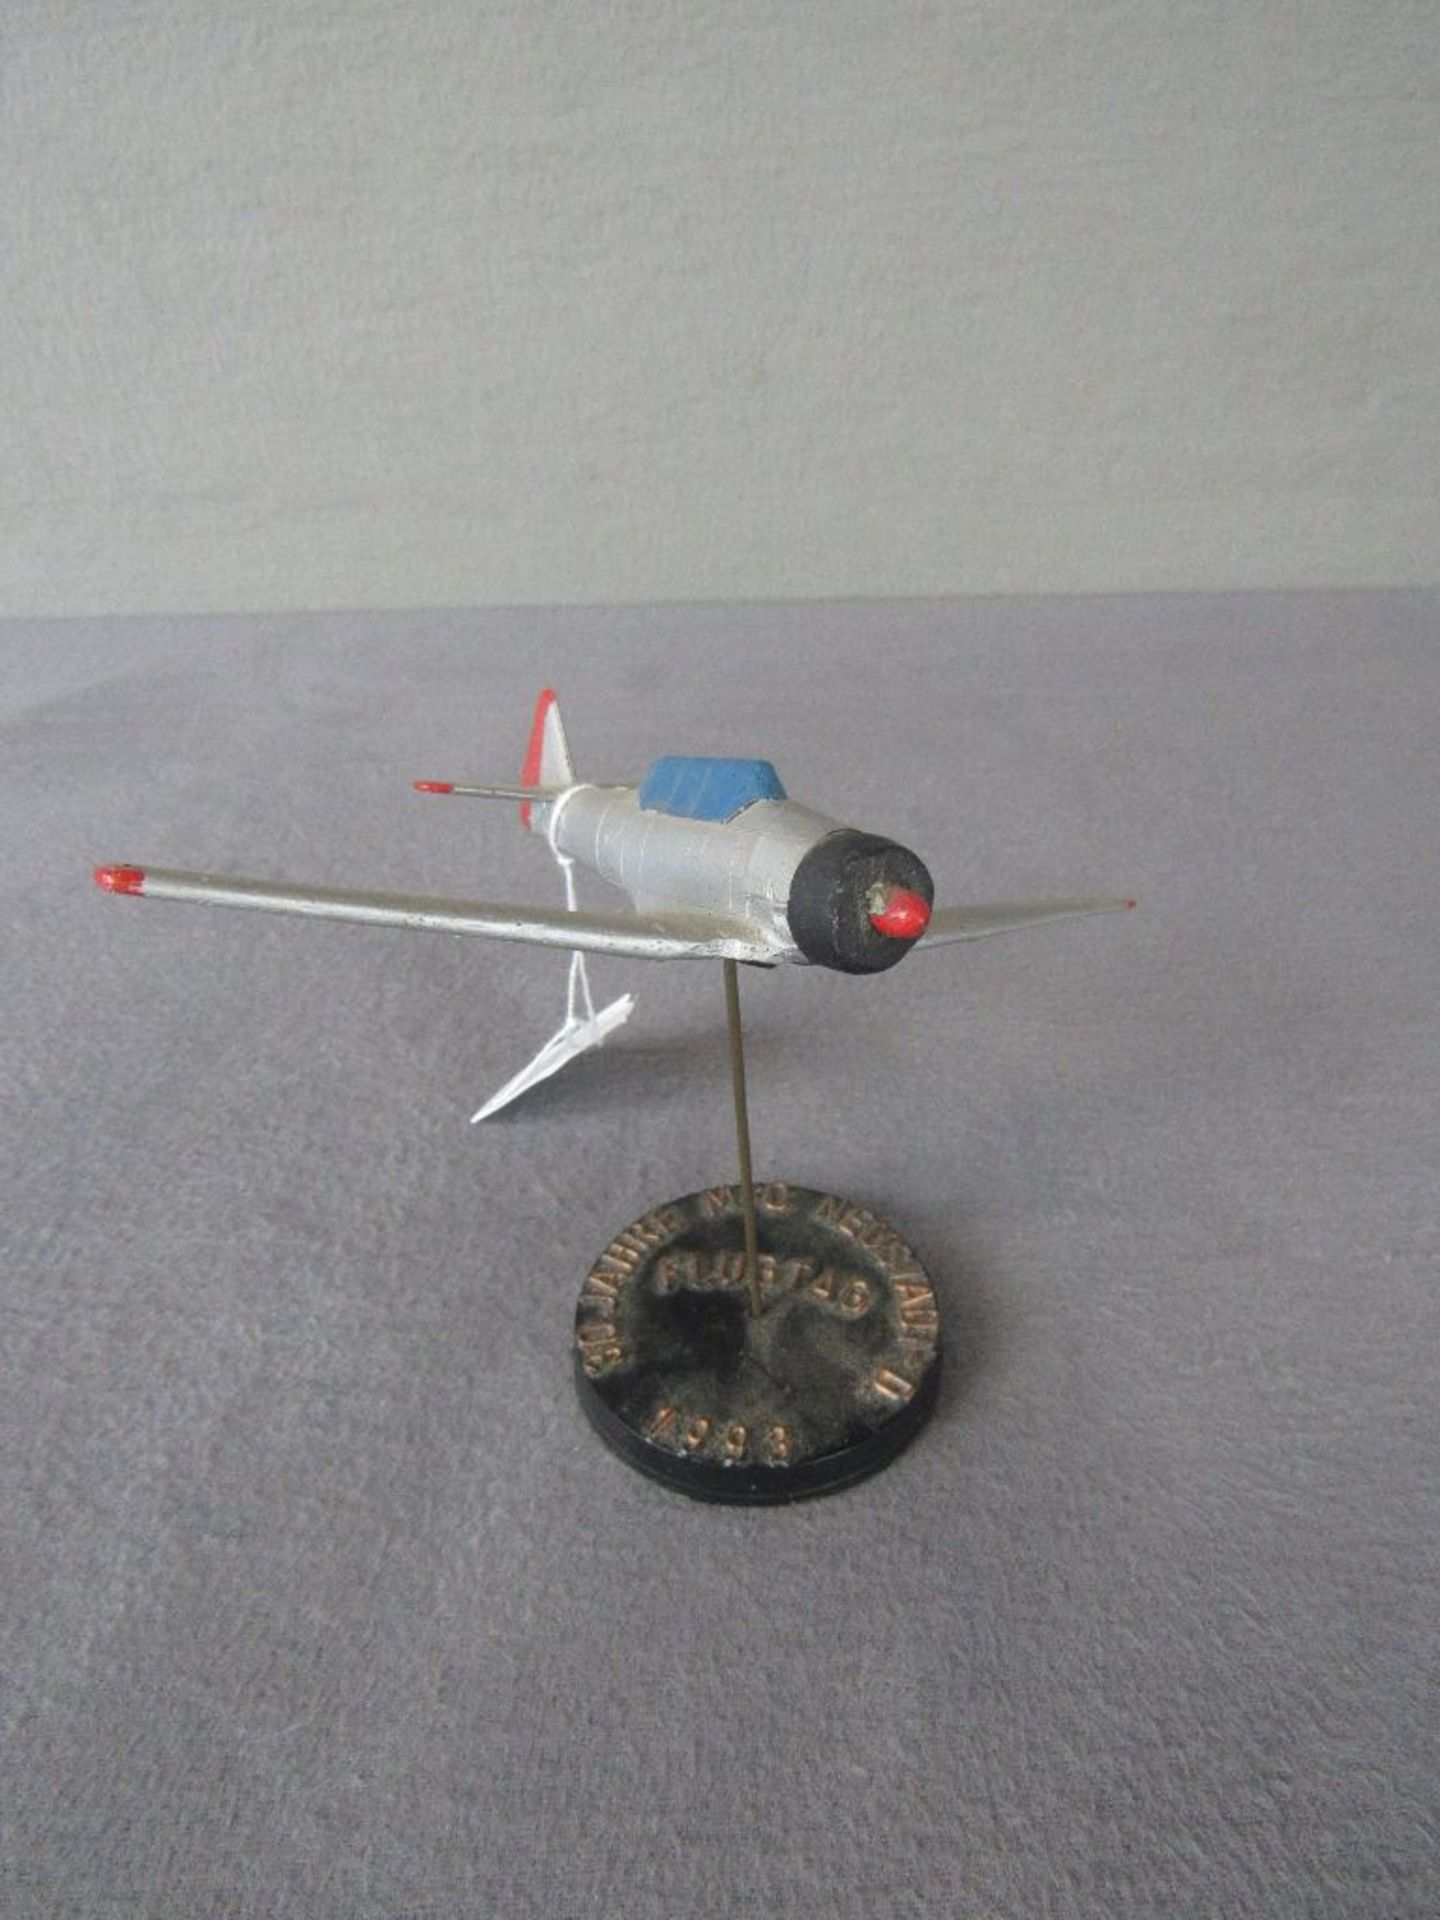 Schreibtischdekoration Modellflugzeug Durchmesser 18,5cm